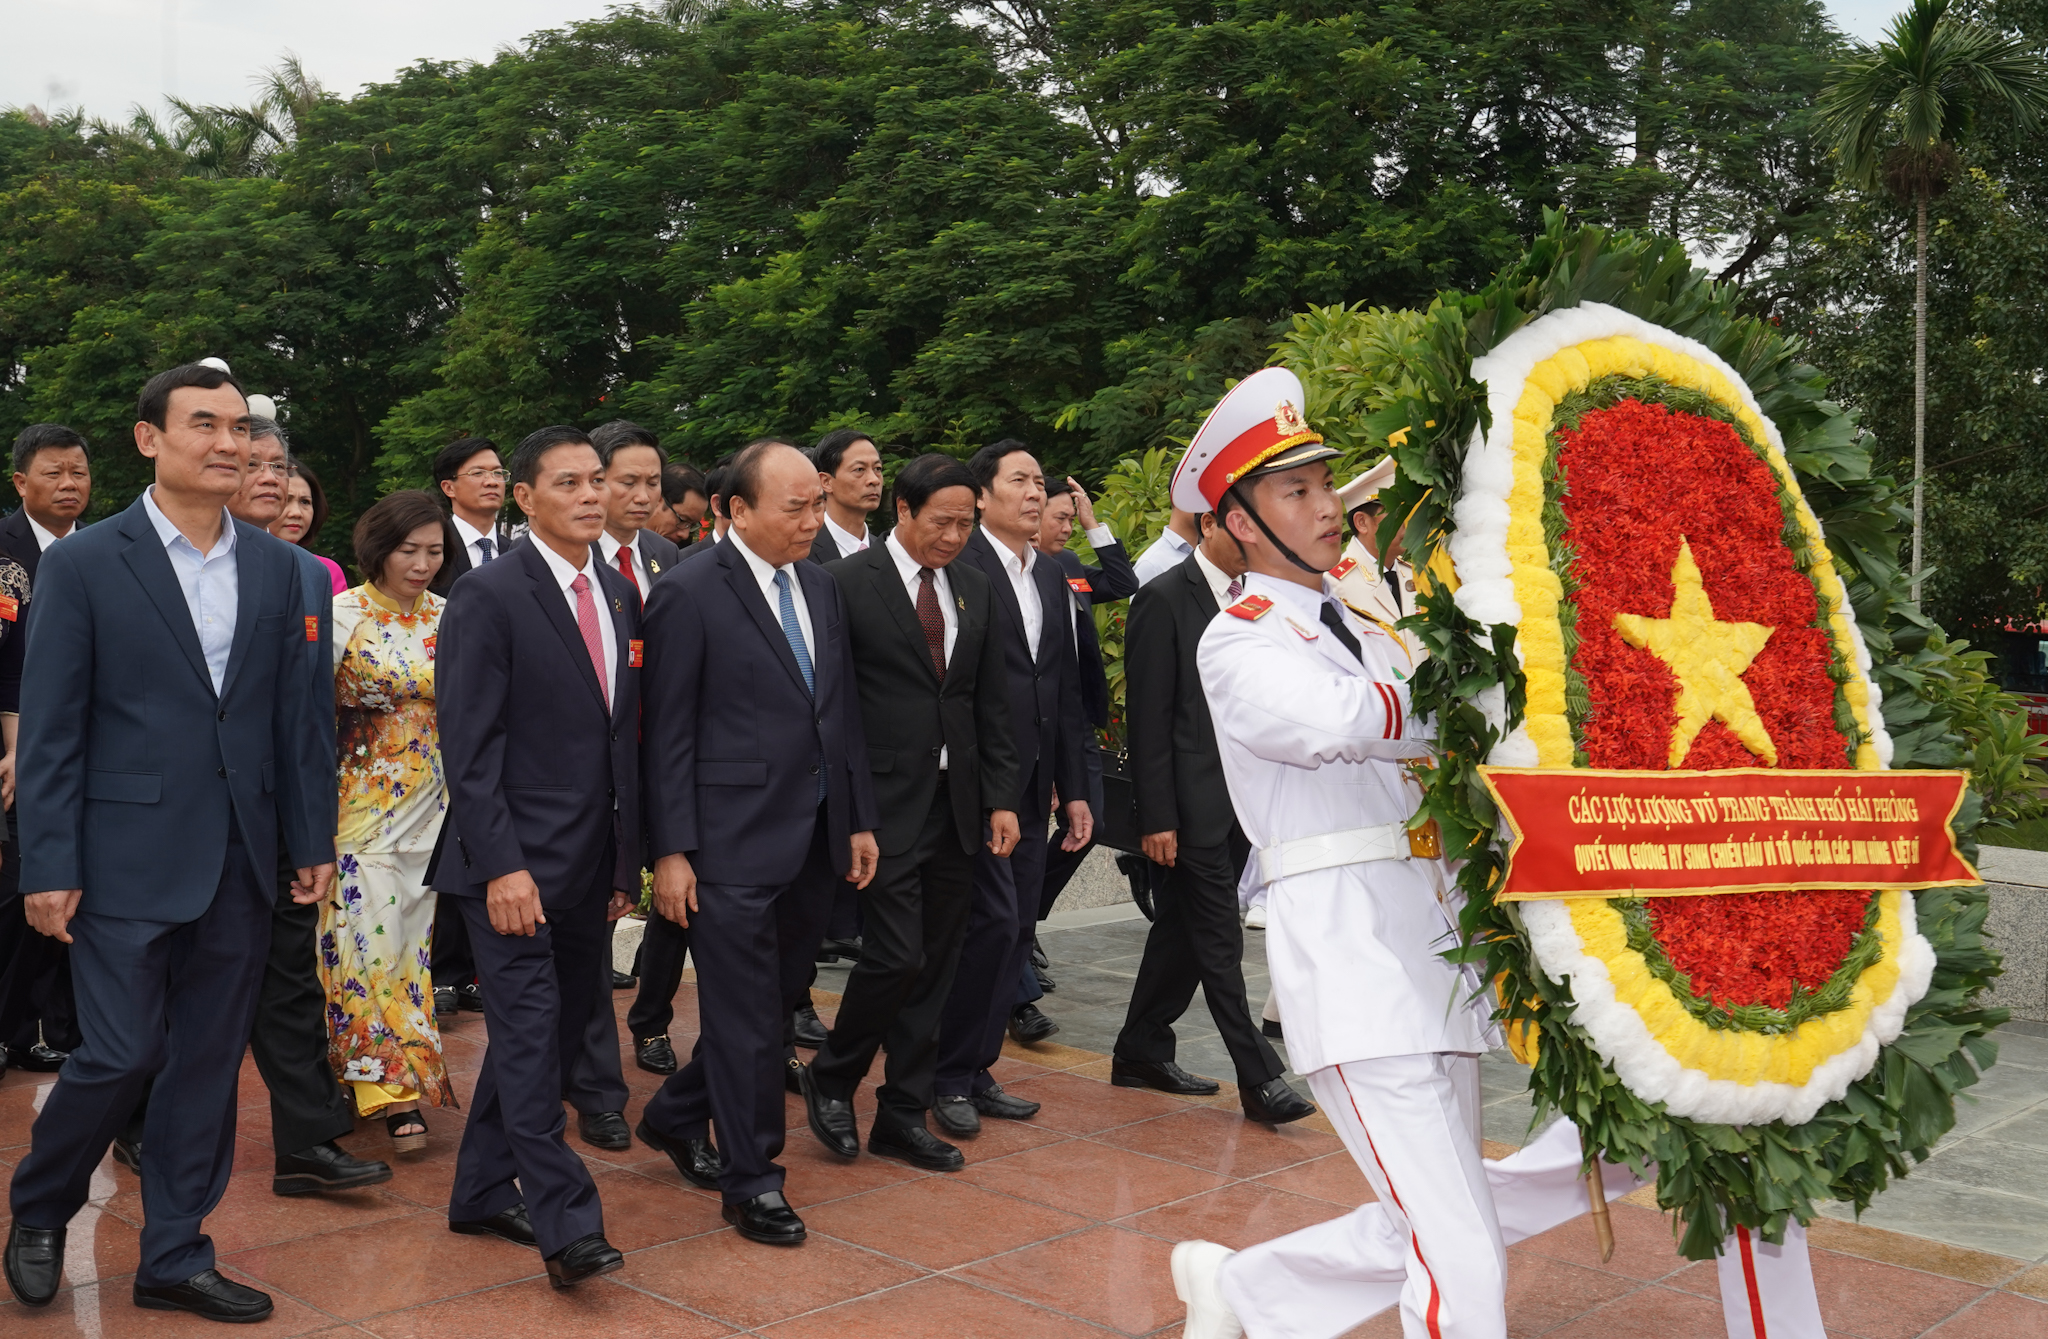 Thủ tướng Nguyễn Xuân Phúc đặt vòng hoa, dâng hương tưởng niệm các anh hùng liệt sĩ tại Đài Tưởng niệm các anh hùng liệt sĩ. Ảnh: VGP/Quang Hiếu